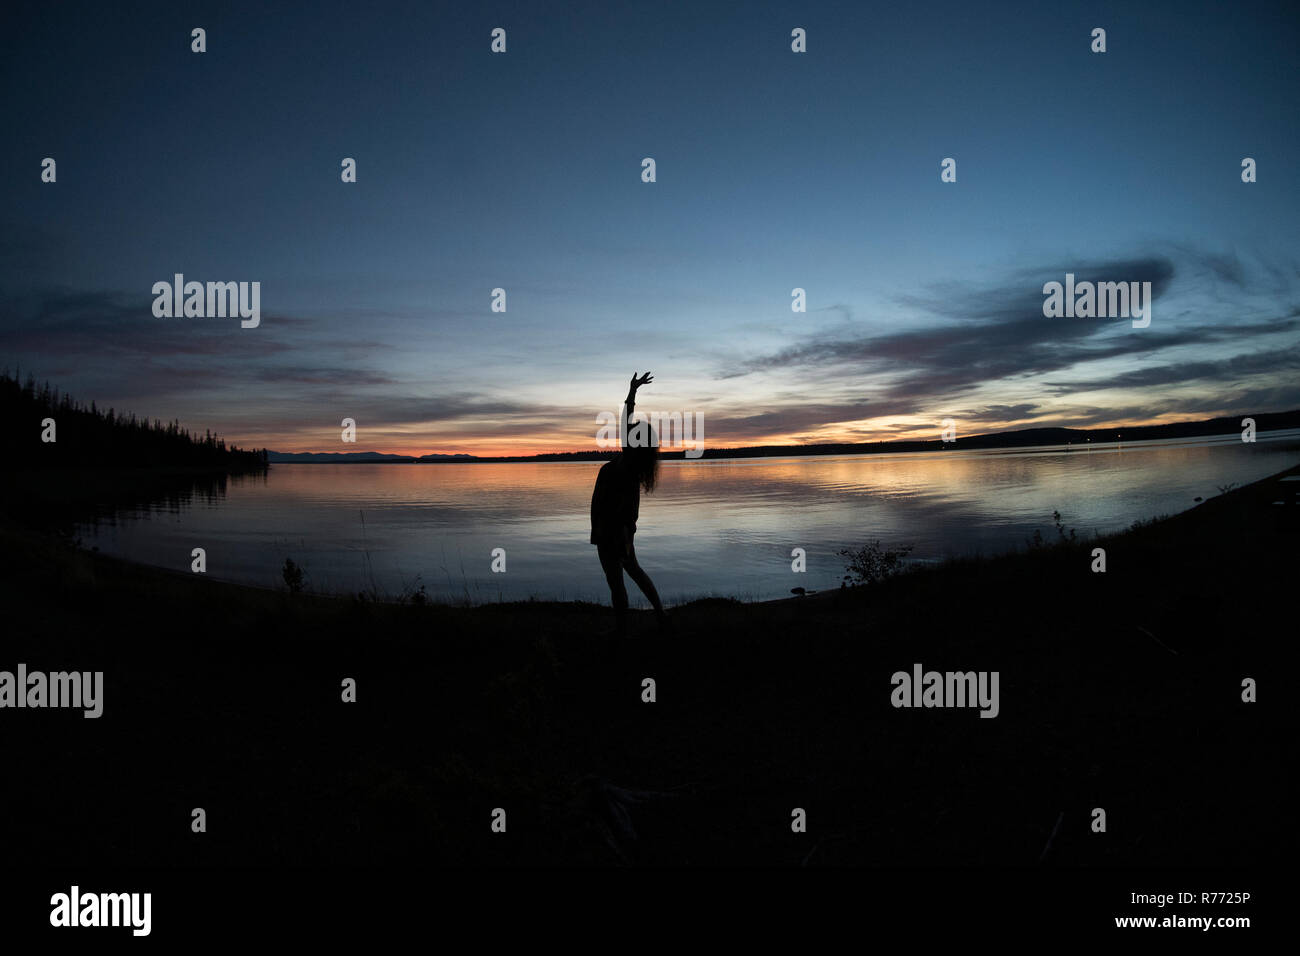 Image de grand angle en silhouette femme debout par l'eau, d'étirements et d'admirer l'horizon magnifiquement éclairée avec la paix et la solitude à Lakeside Banque D'Images